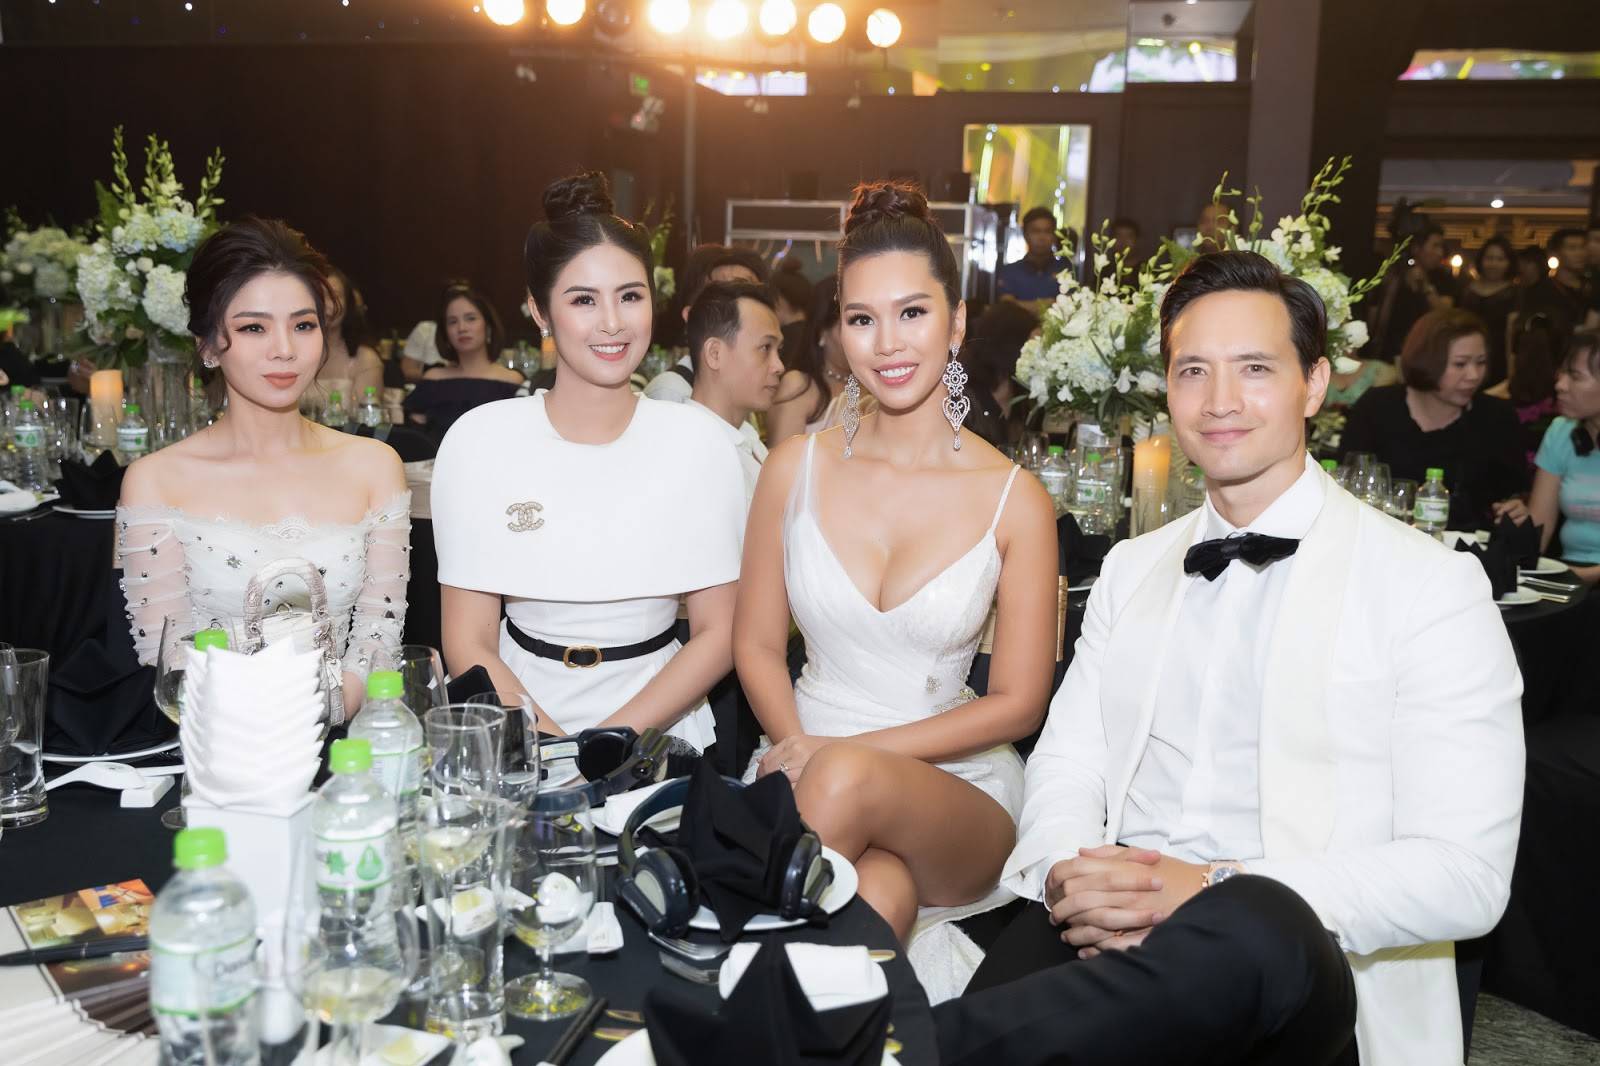 Ba mĩ nhân: ca sĩ Lệ Quyên, hoa hậu Ngọc Hân, siêu mẫu Hà Anh đẹp rạng ngời bên cạnh nam diễn viên Kim Lý tại sự kiện